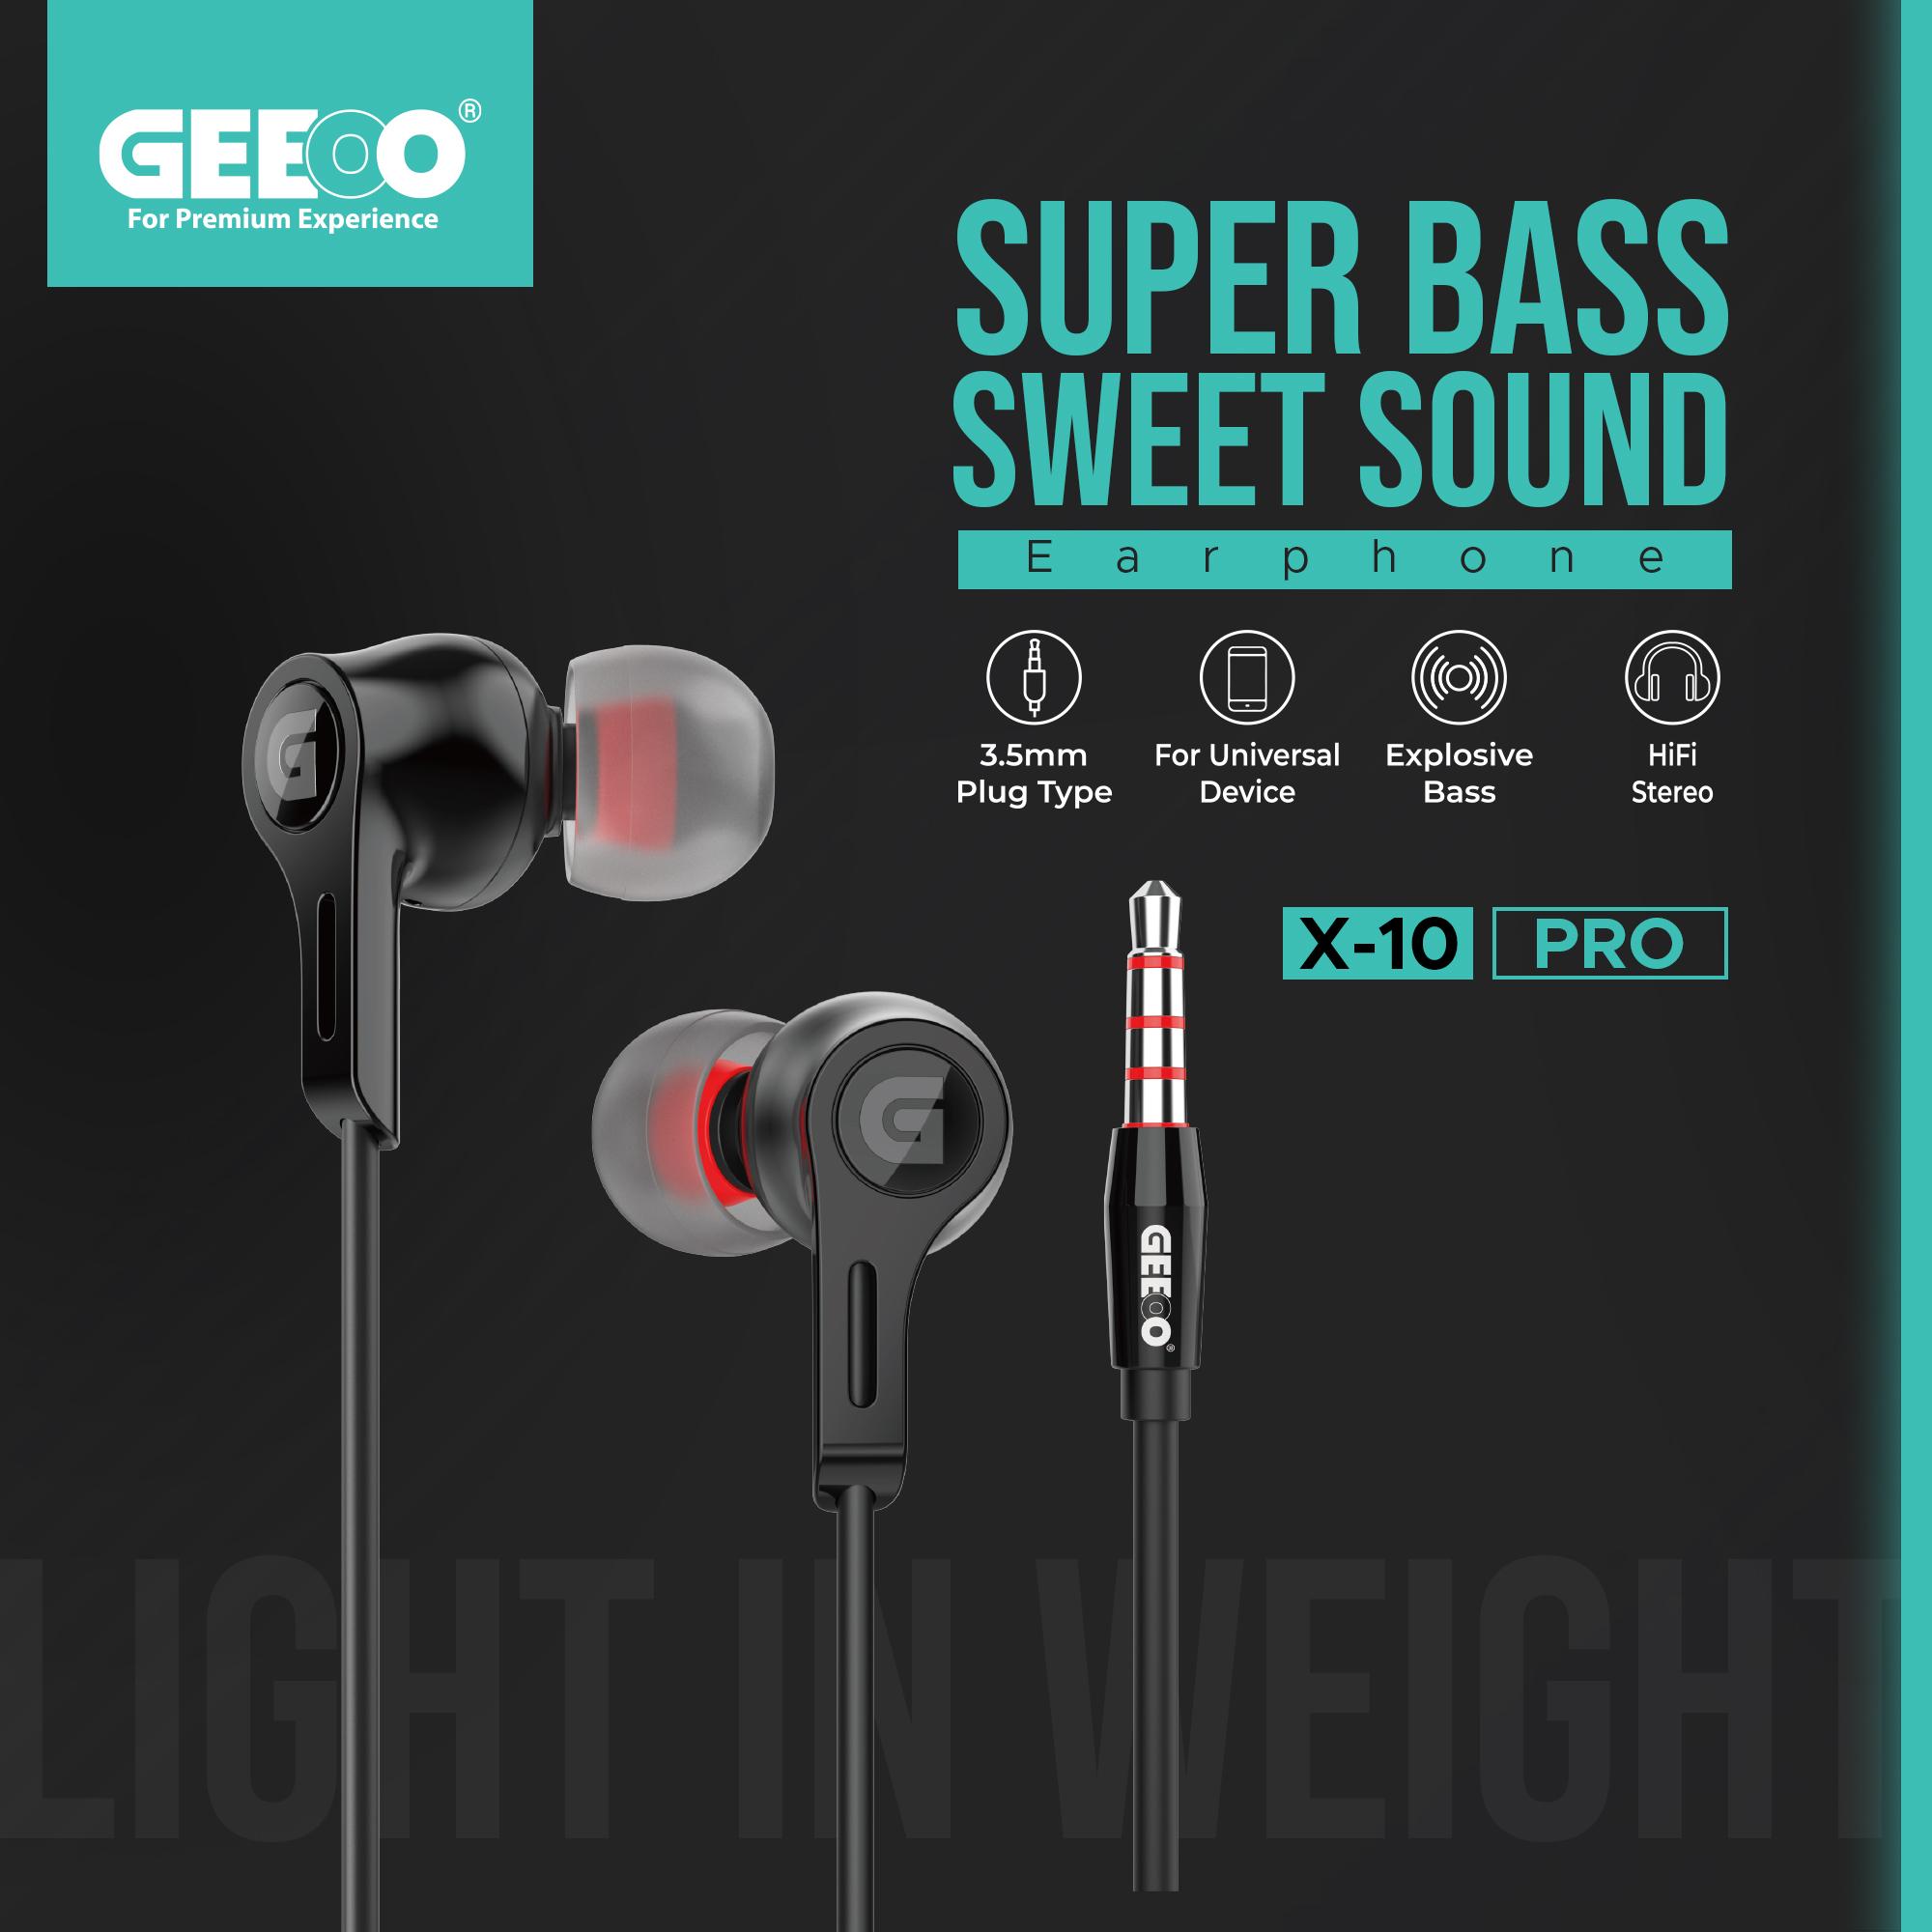 Geeoo X10 Pro Wired Earphone